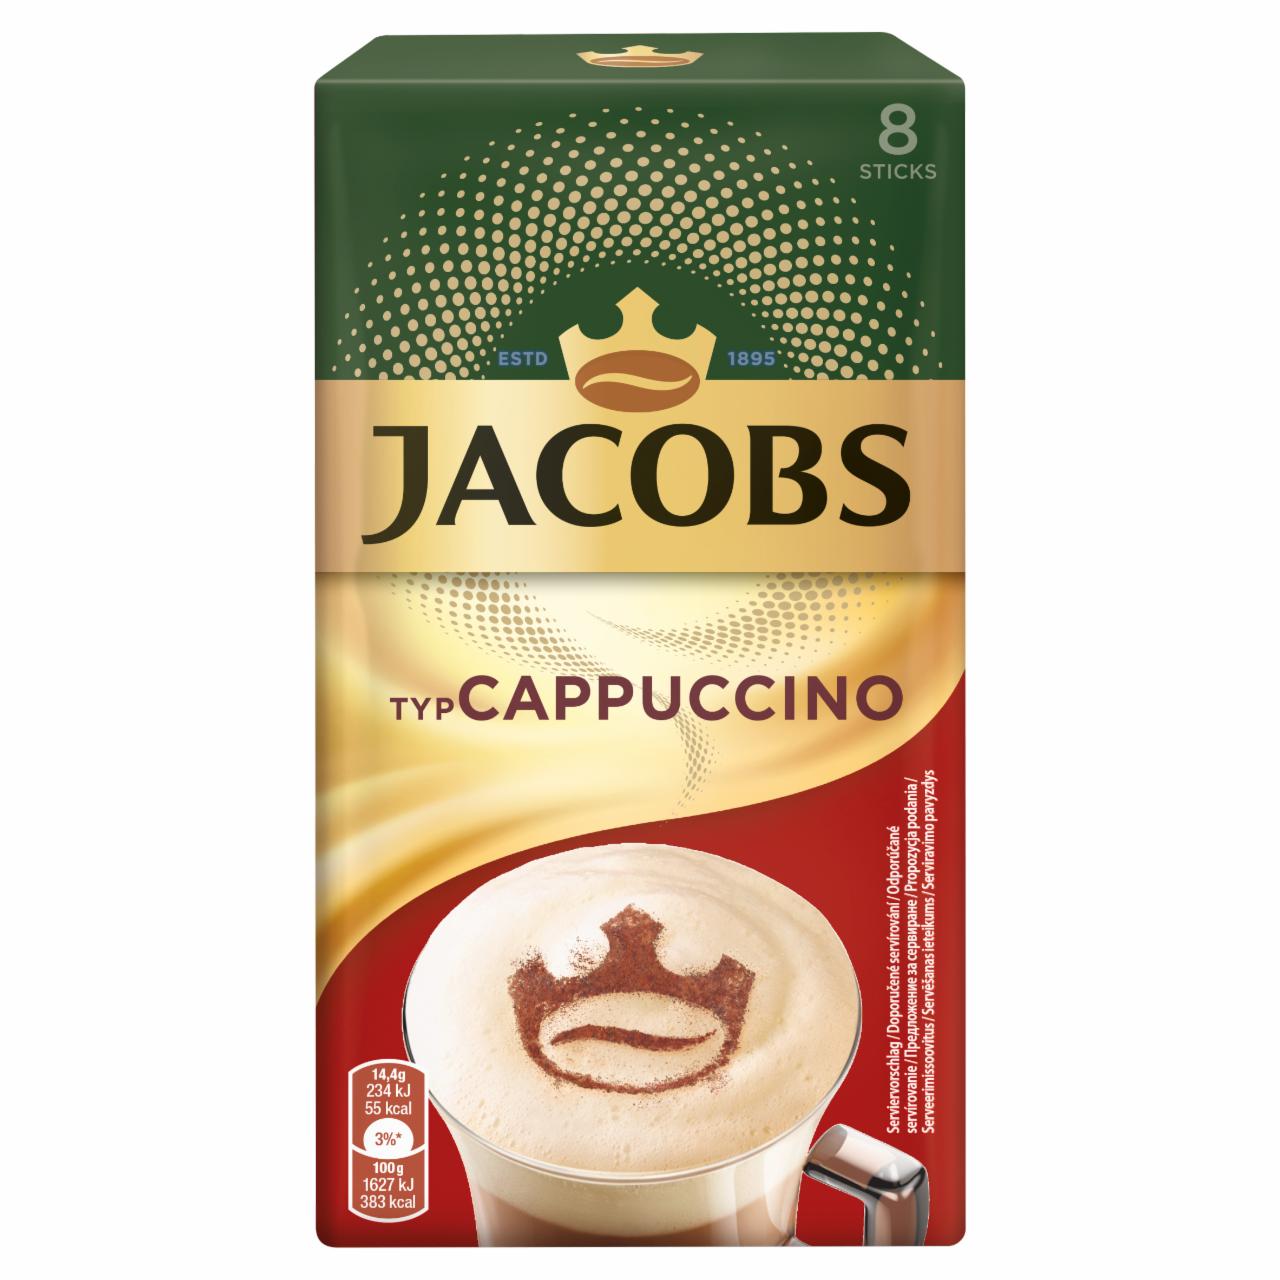 Képek - Jacobs azonnal oldódó kávéitalpor cukorral és sovány tejporral 8 x 14,4 g (115,2 g)